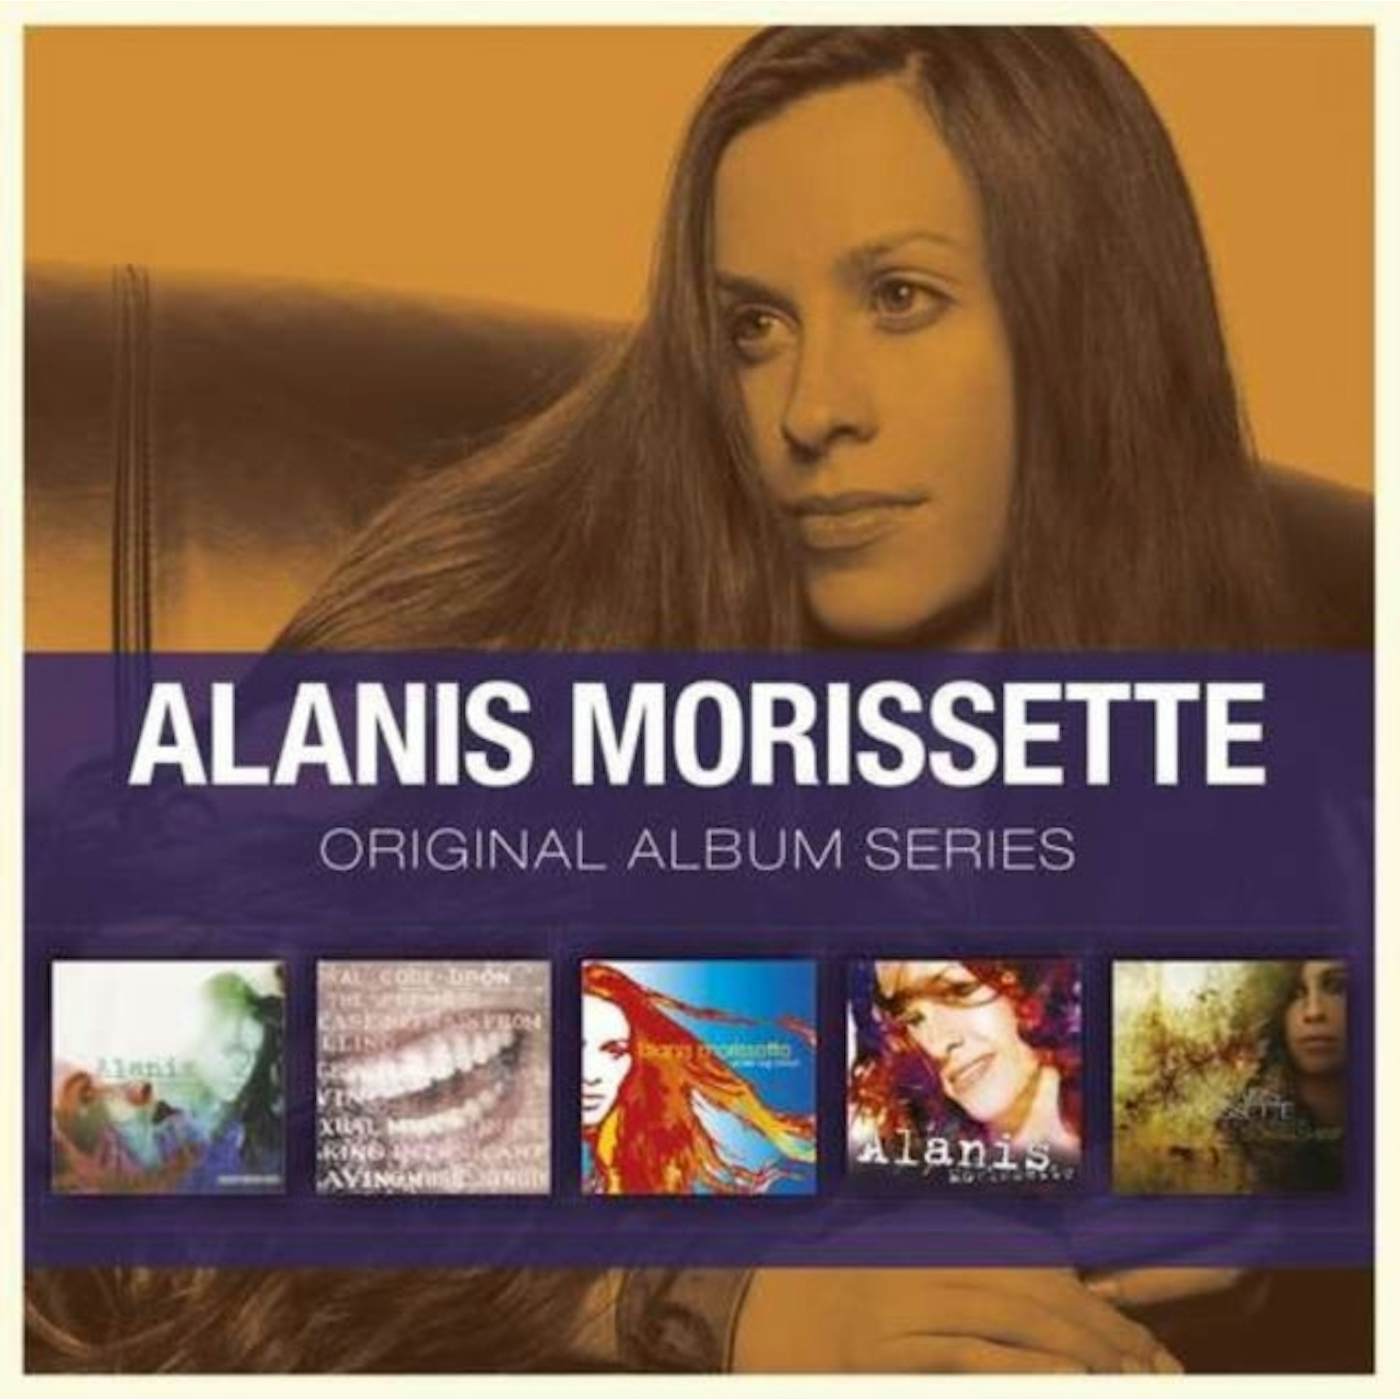 Alanis Morissette CD - Original Album Series